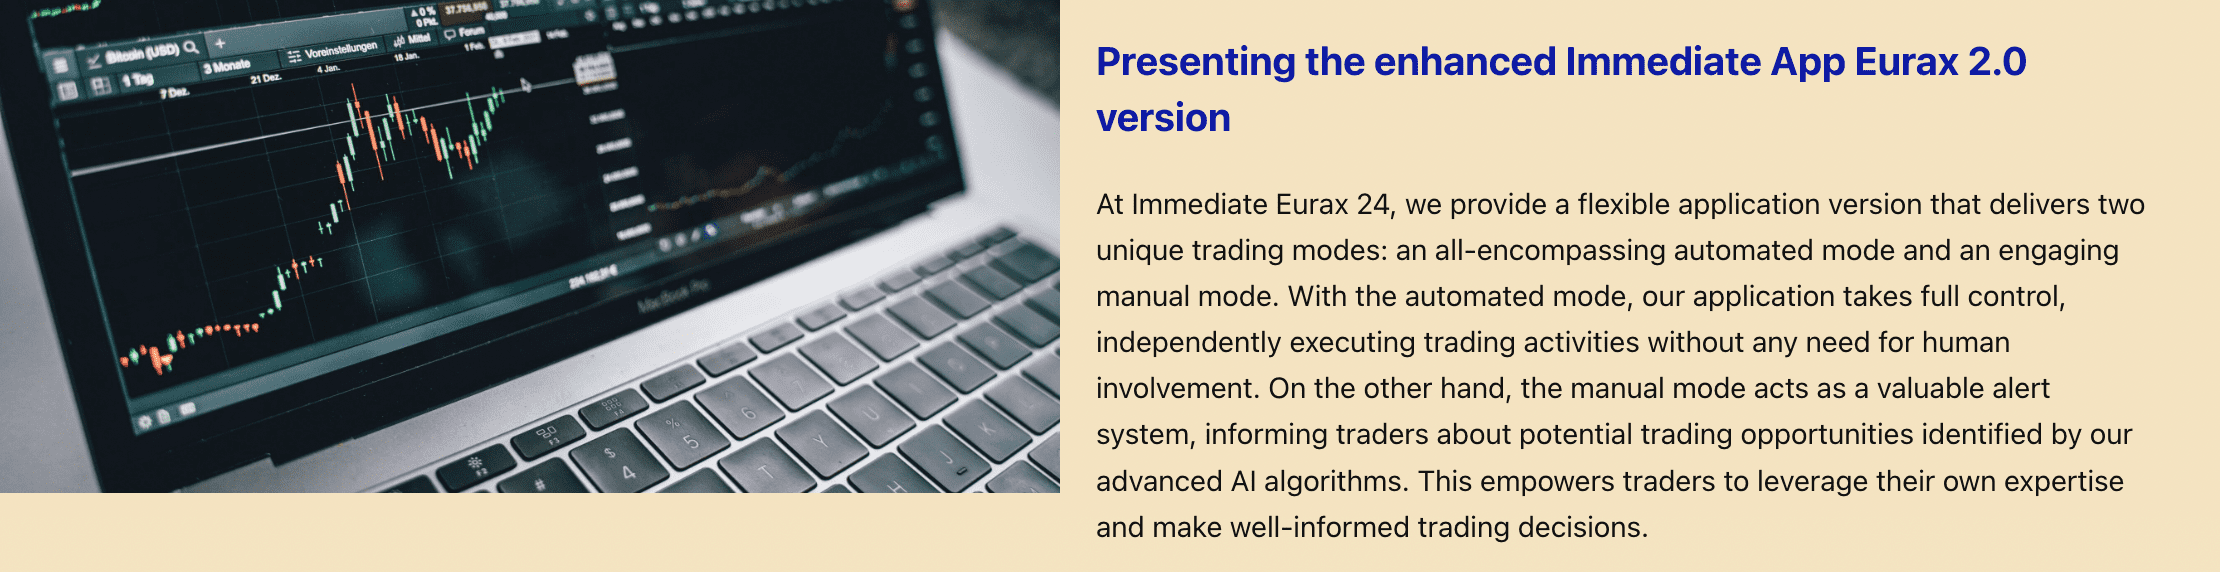 Nova versão Immediate Eurax 1.0